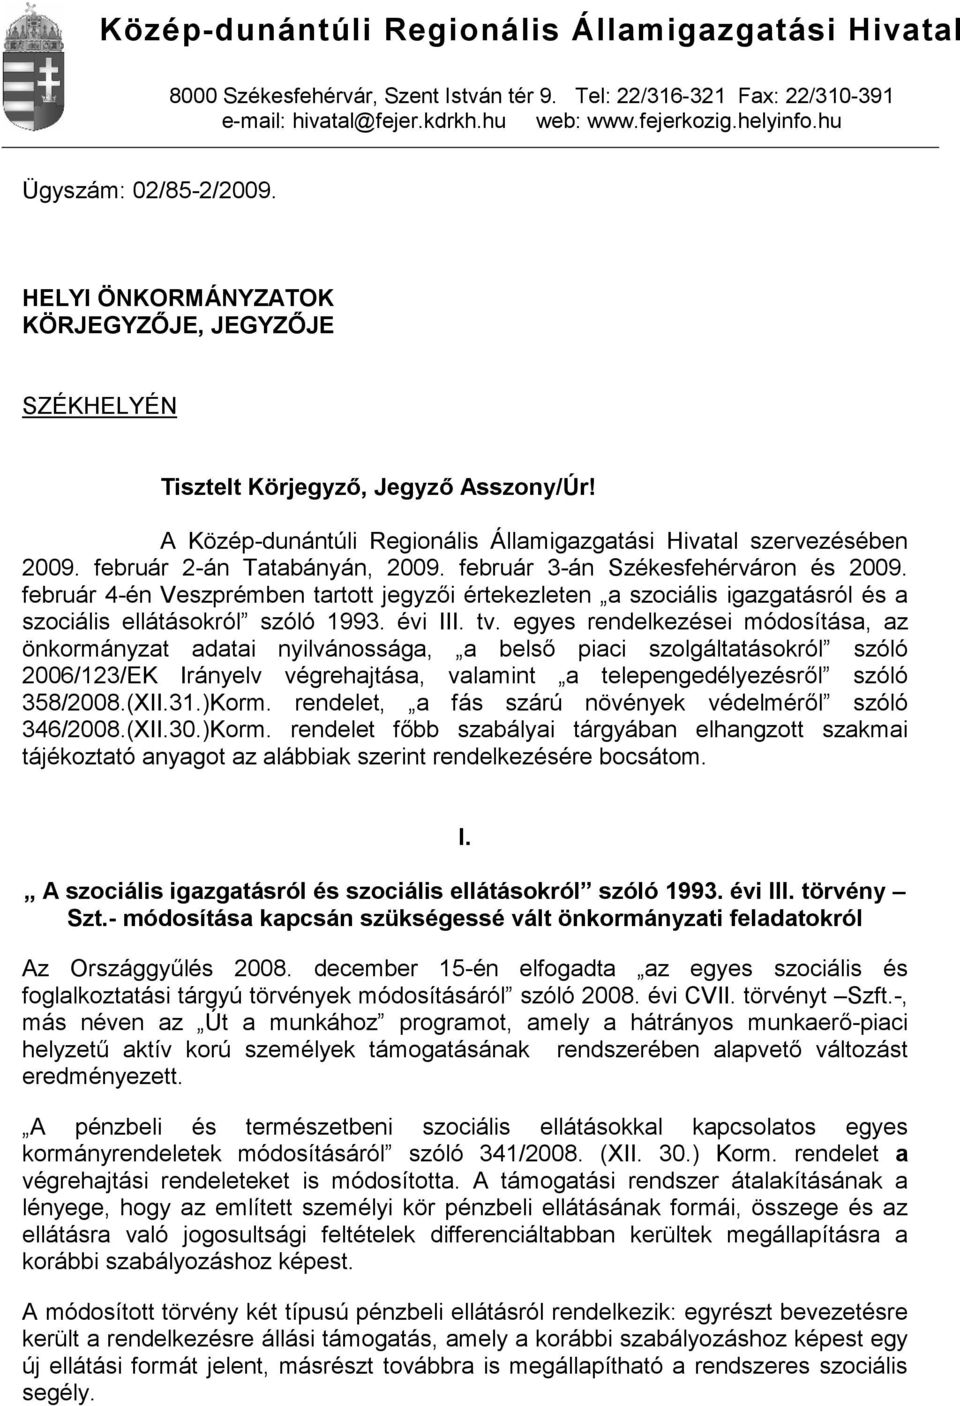 február 2-án Tatabányán, 2009. február 3-án Székesfehérváron és 2009. február 4-én Veszprémben tartott jegyzői értekezleten a szociális igazgatásról és a szociális ellátásokról szóló 1993. évi III.